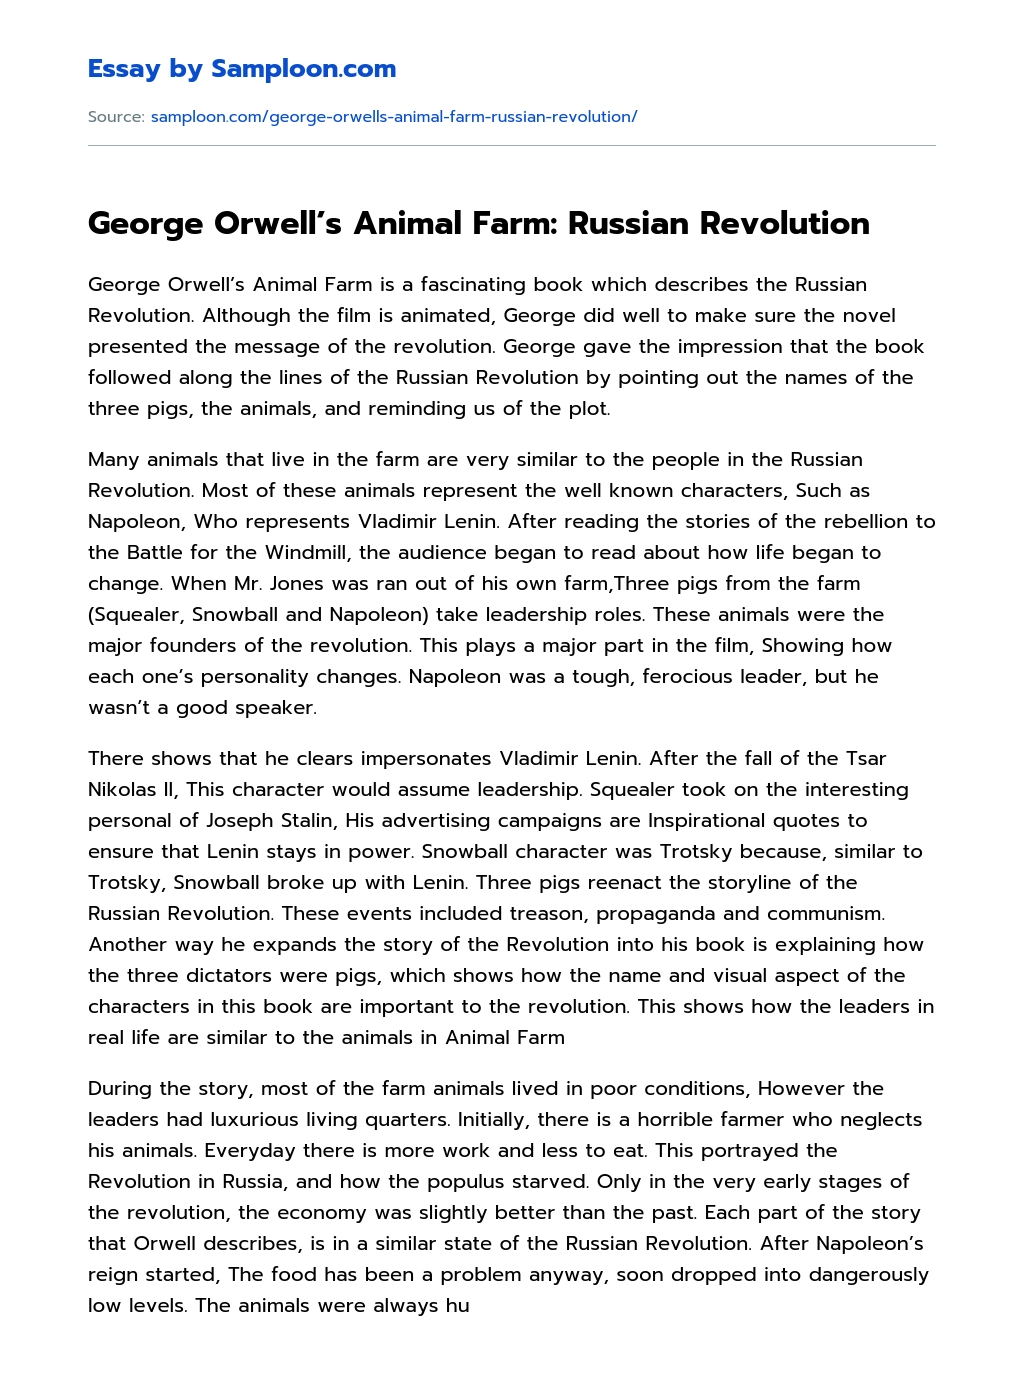 George Orwell's Animal Farm: Russian Revolution Free Essay Sample on  